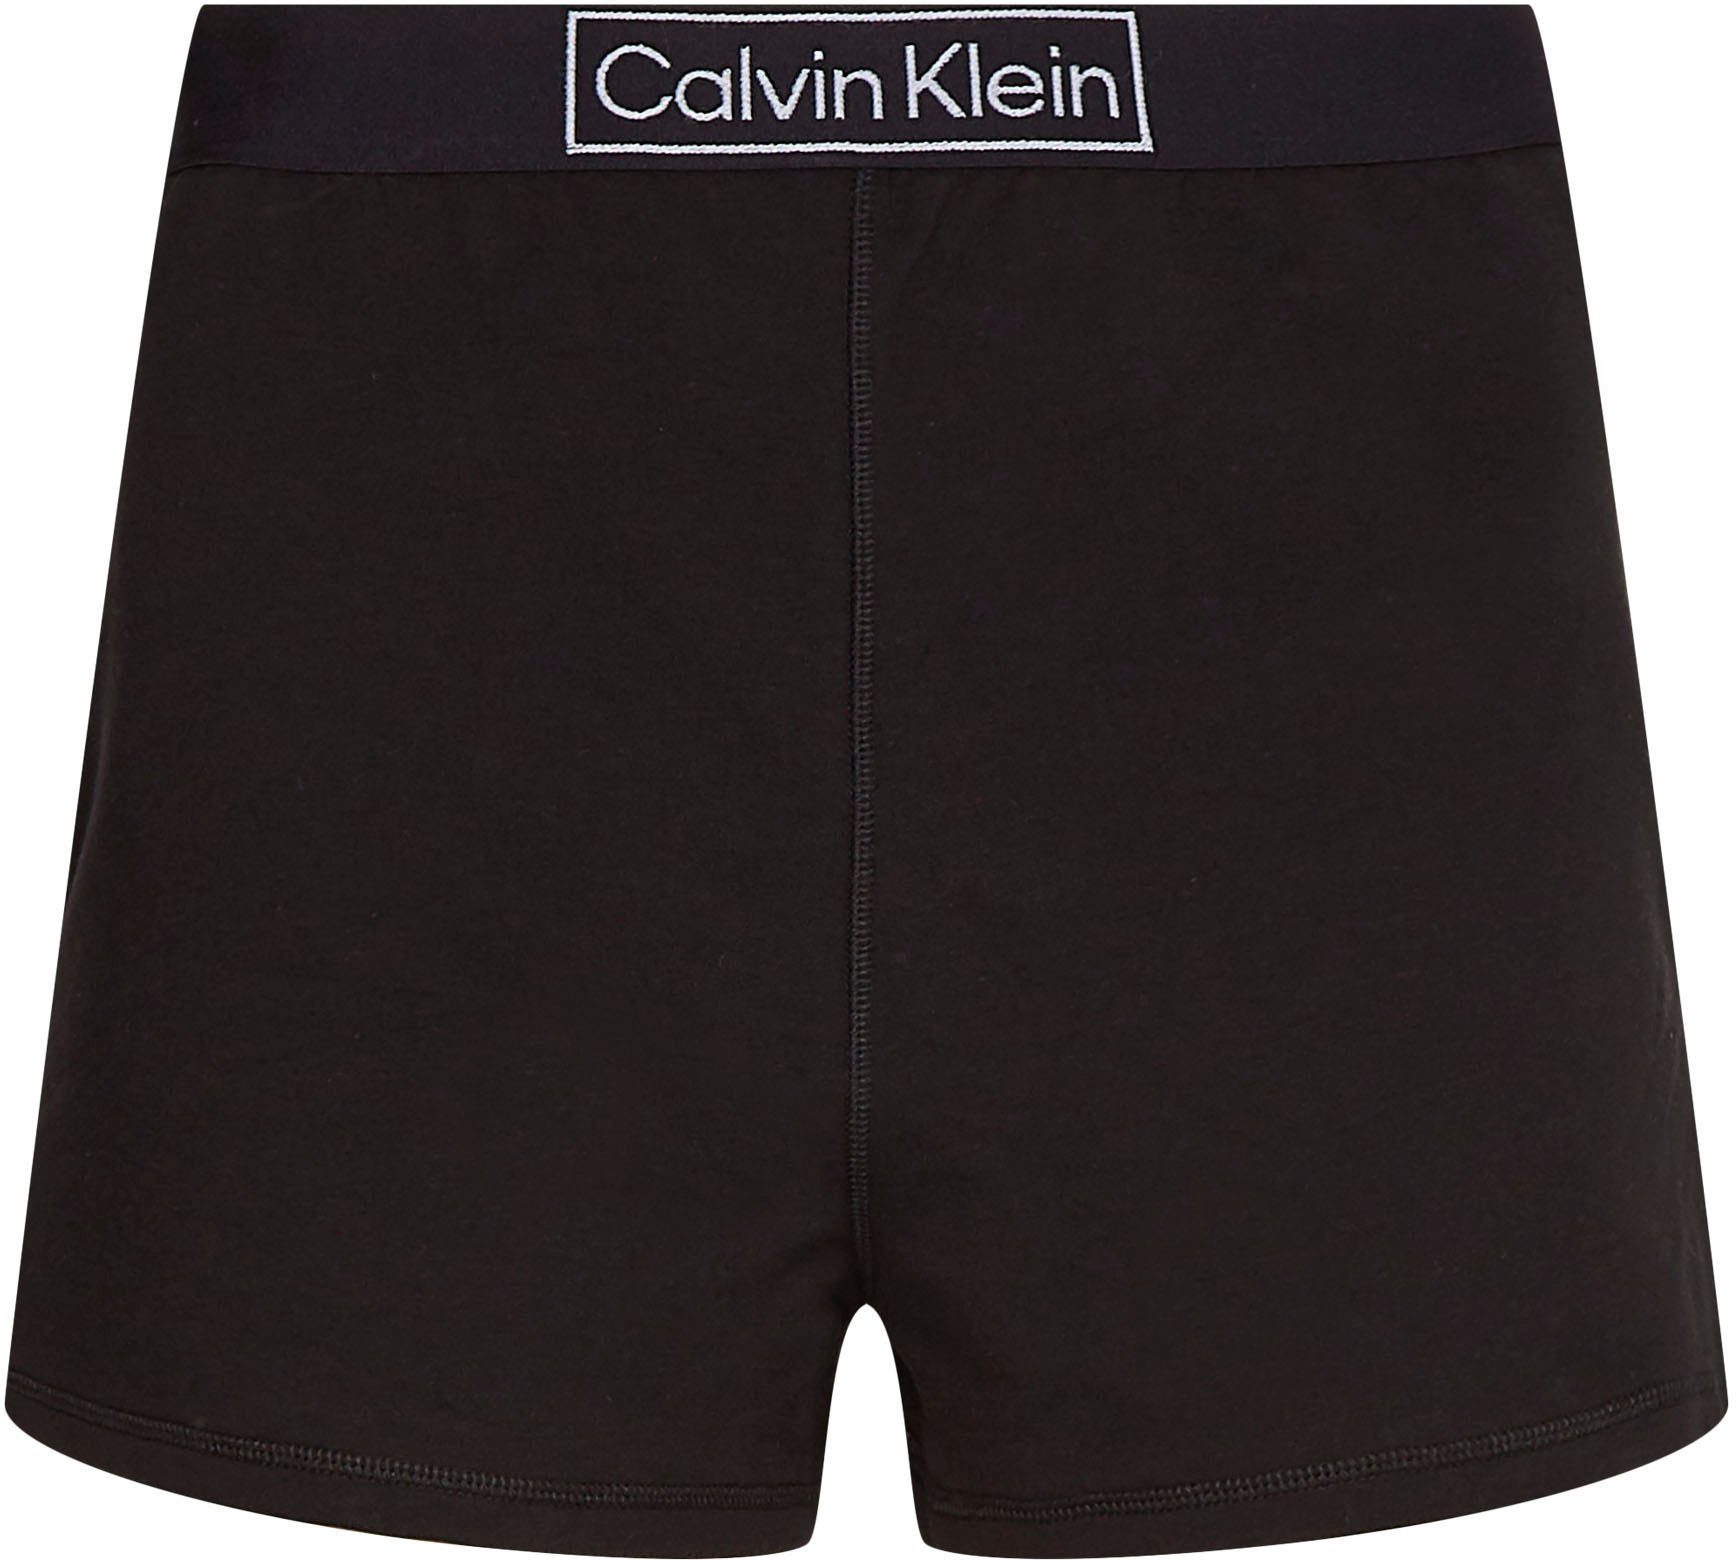 Klein Schlafshorts bequemen Calvin Underwear Gummizug mit